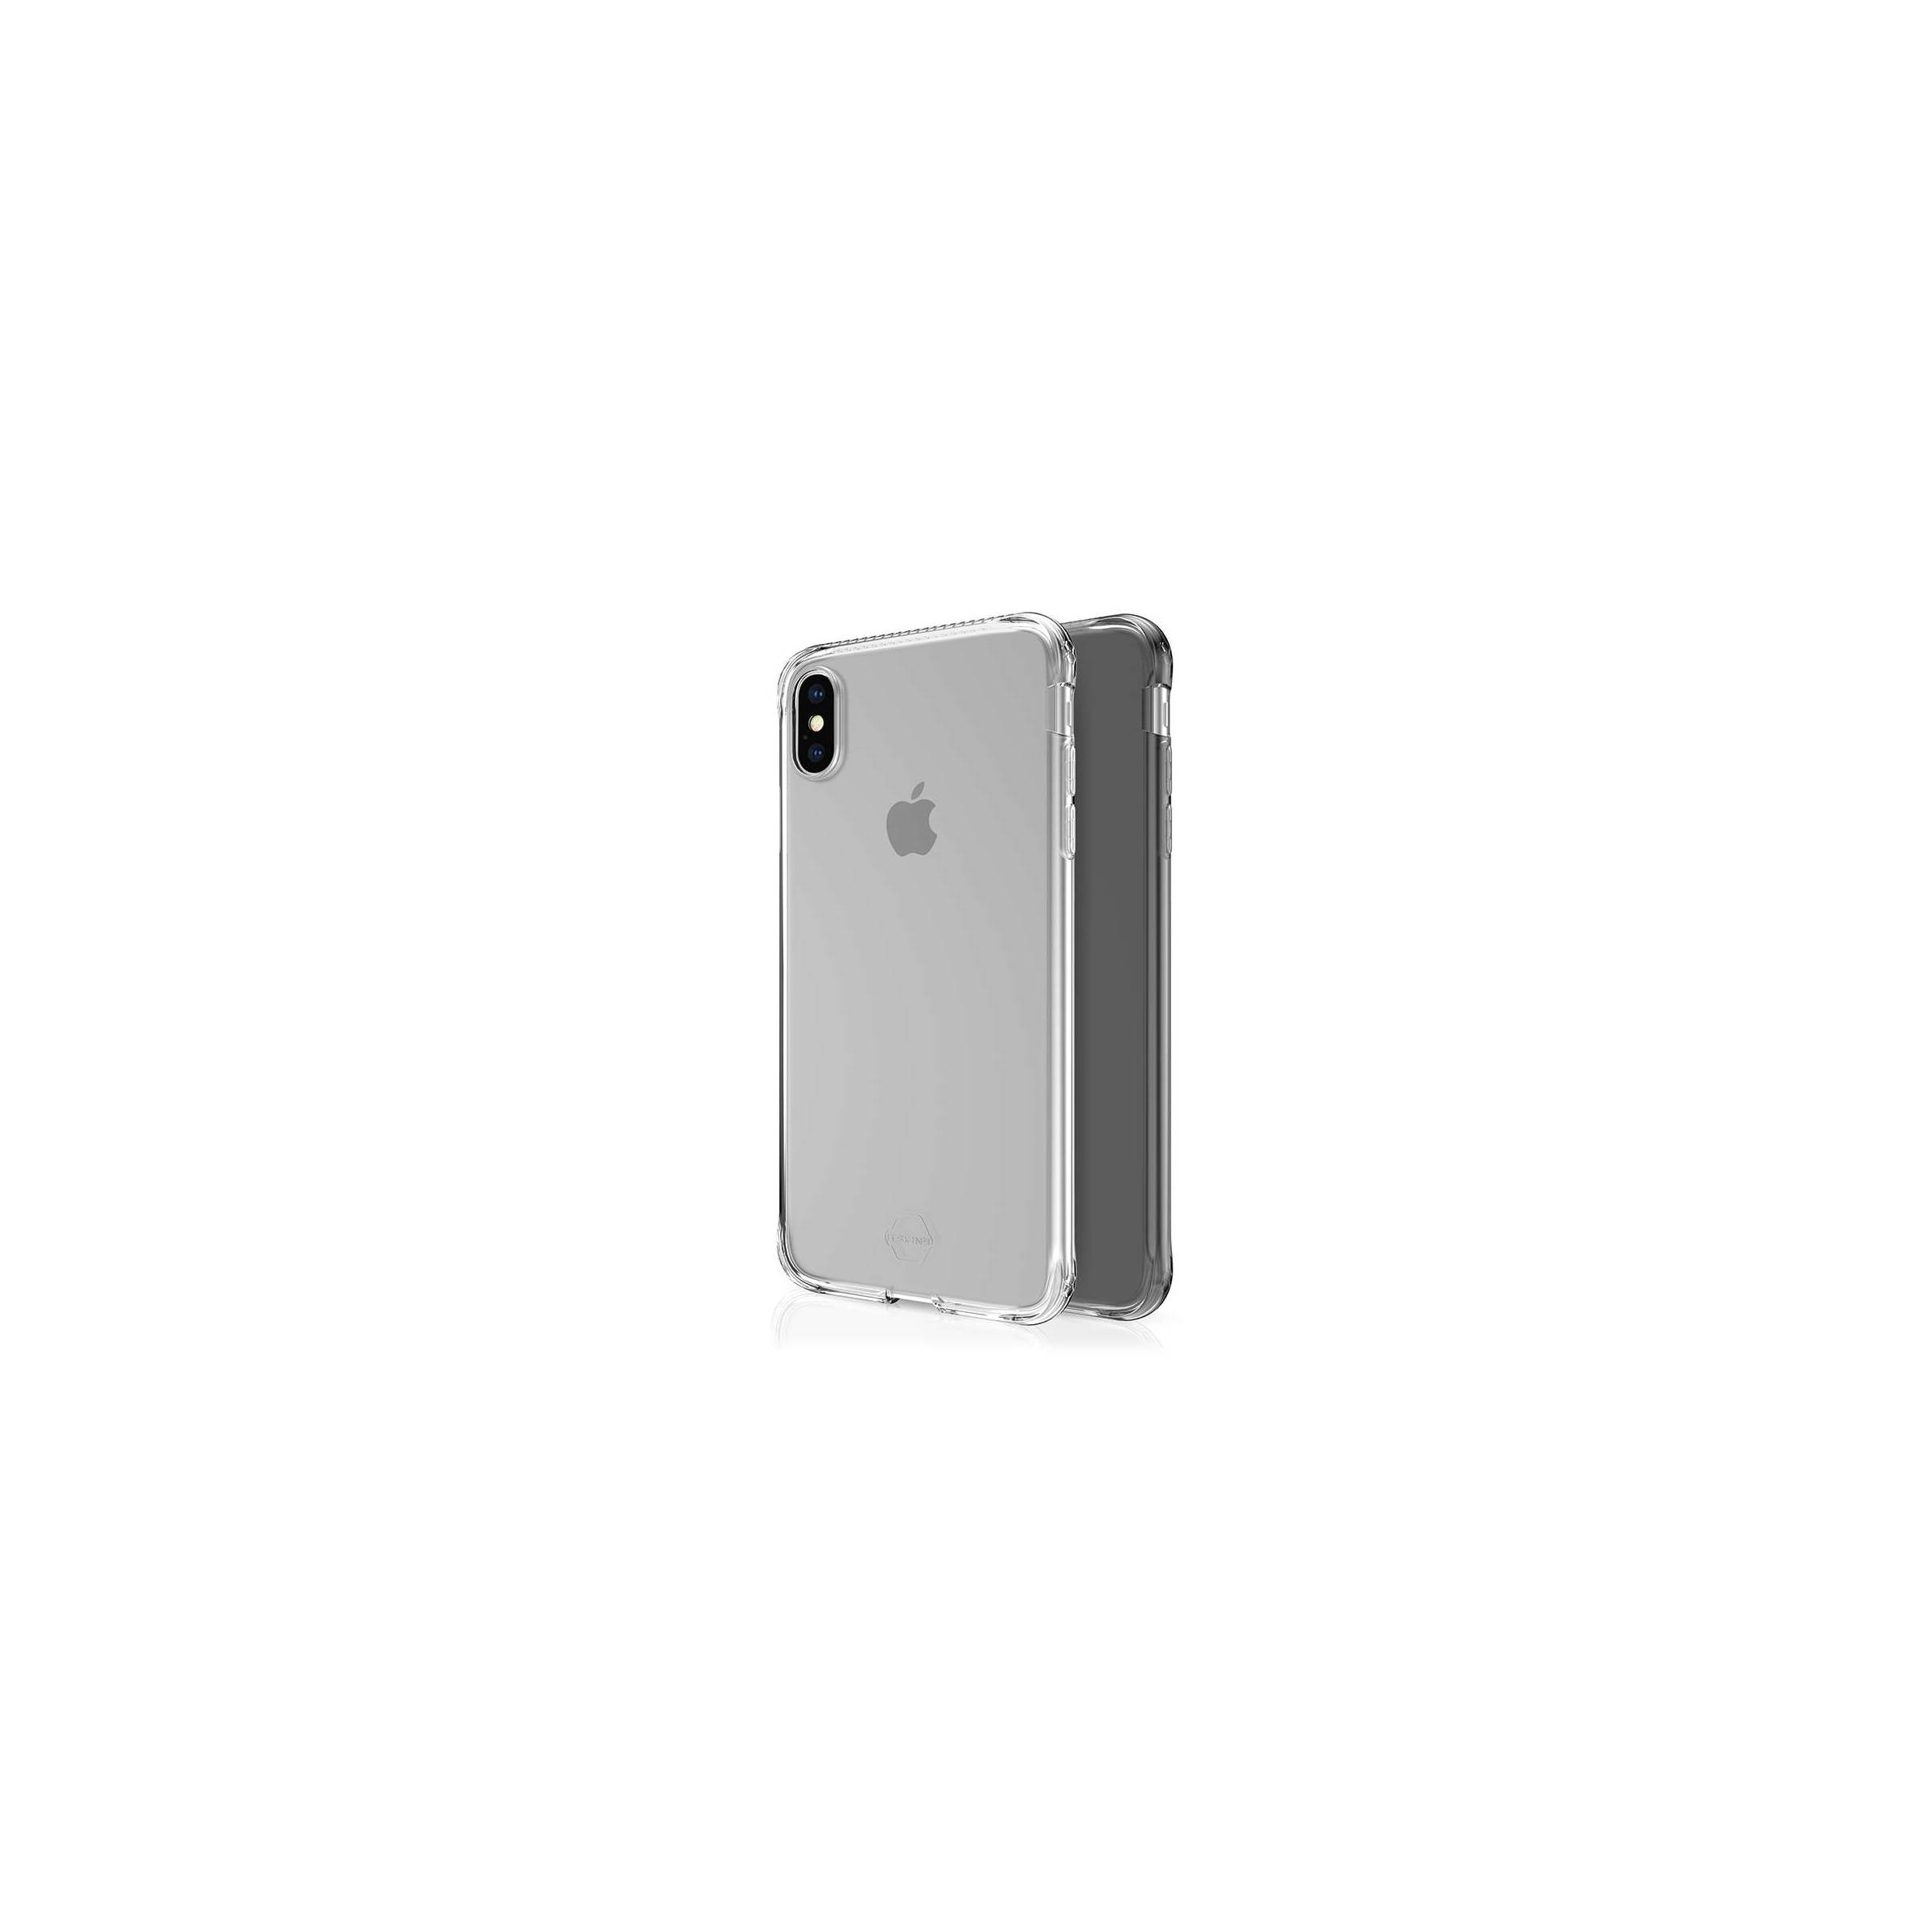 Bilde av Itskins Slim Silikon Protect Gel Iphone Xs Max Deksel Dobbel 2x Pakke, Farge Klar & Sort